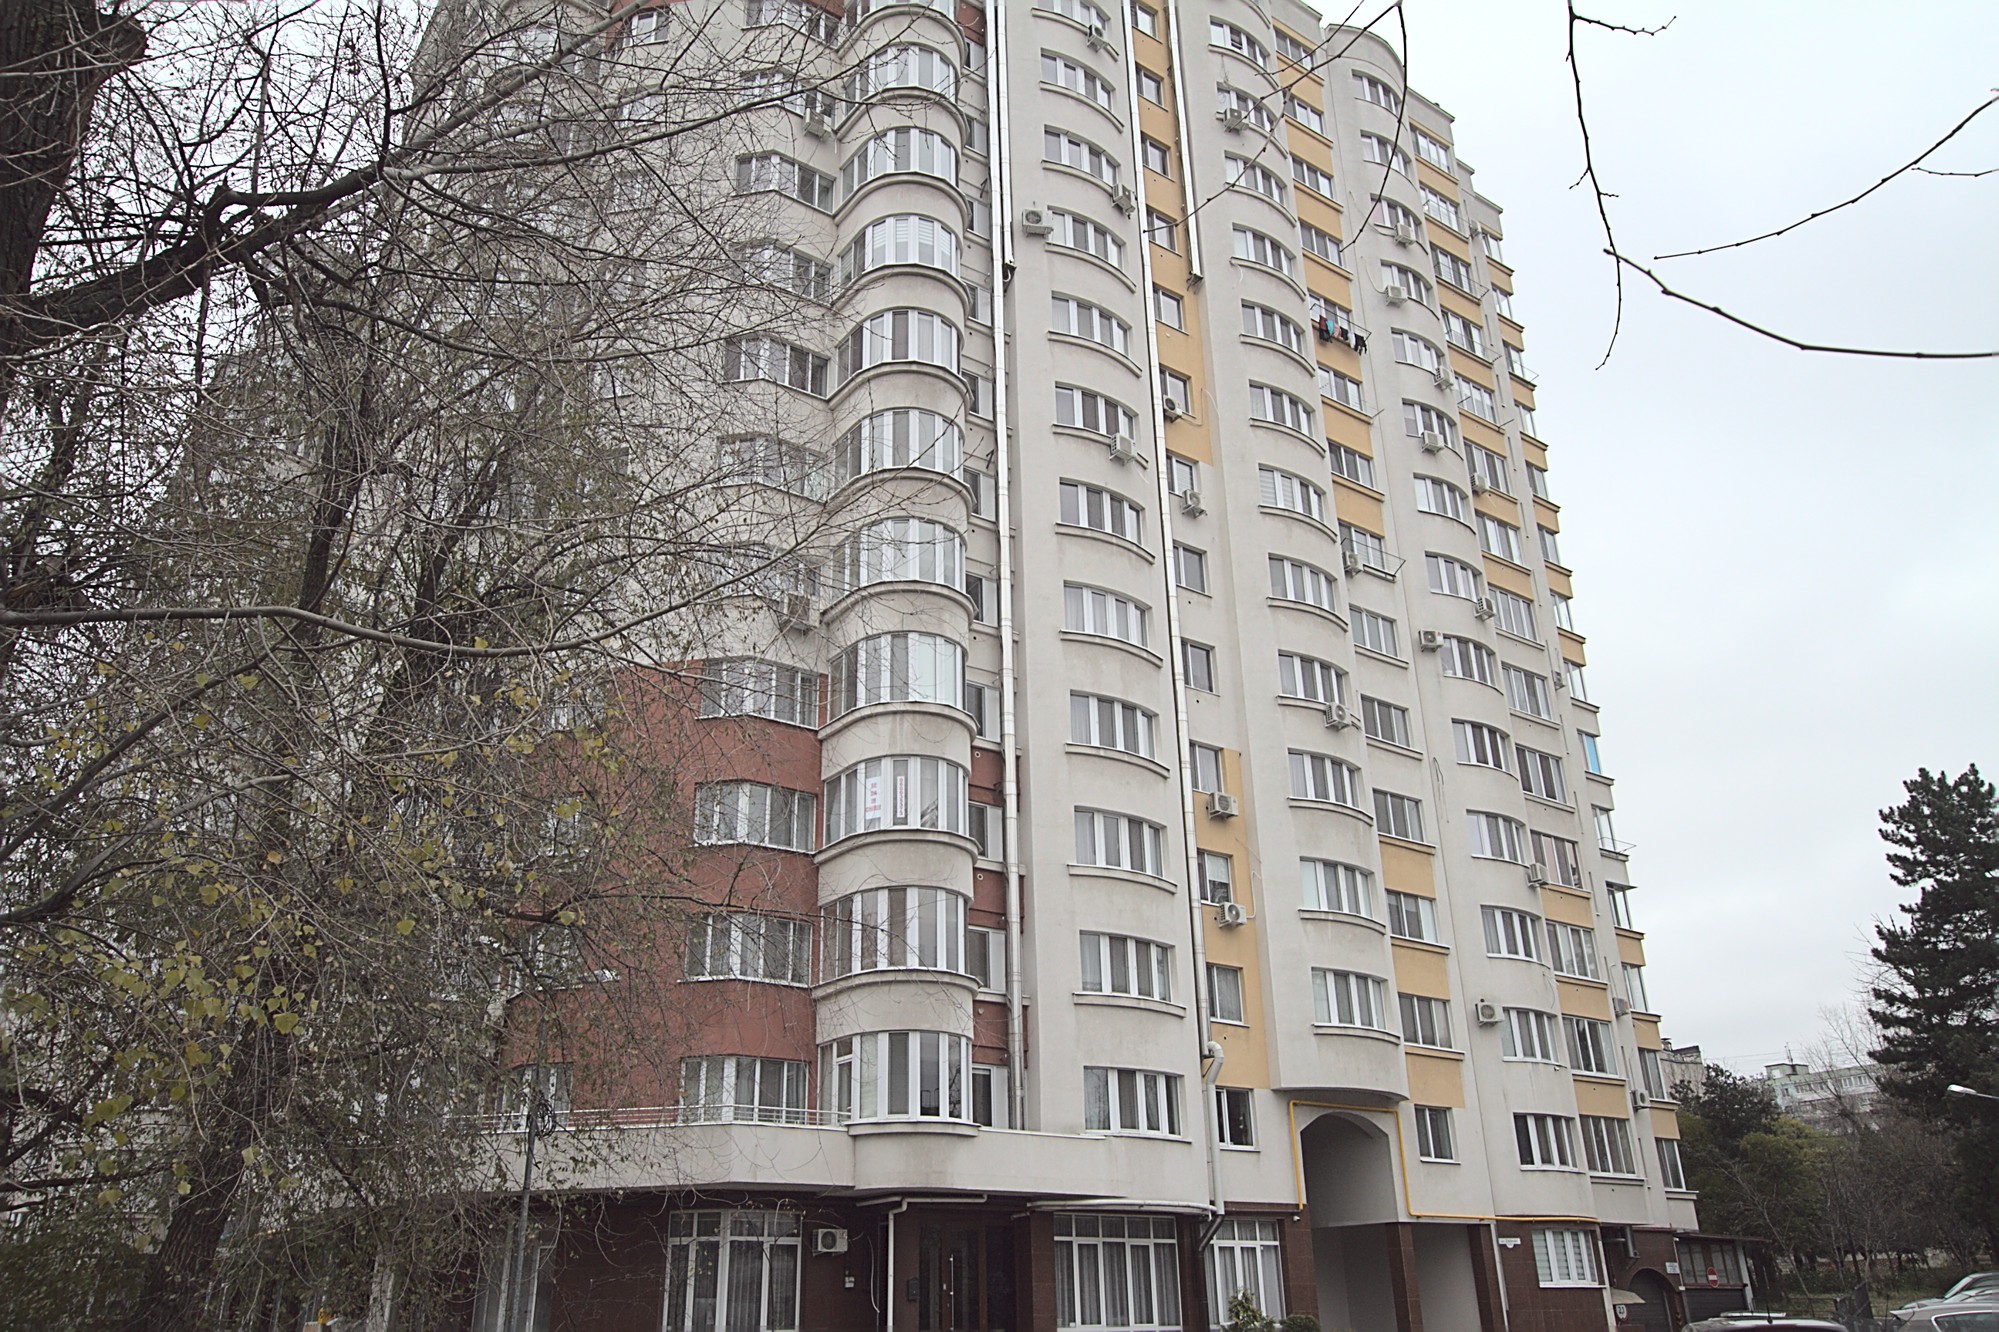 Elegance Trio es un apartamento de 3 habitaciones en alquiler en Chisinau, Moldova